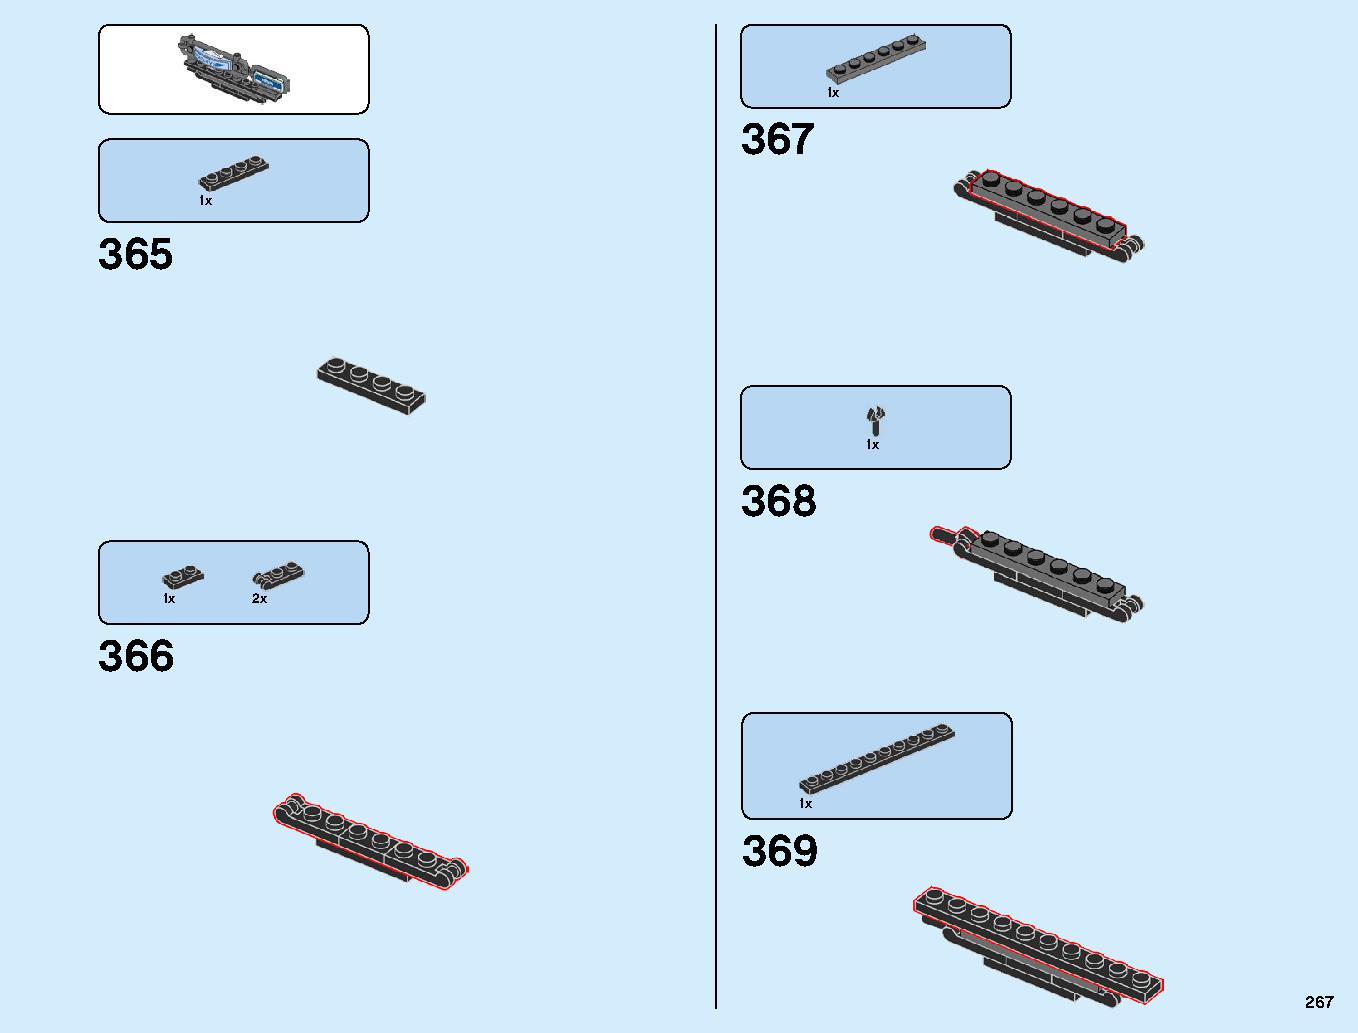 ニンジャゴーシティ・ポートパーク 70657 レゴの商品情報 レゴの説明書・組立方法 267 page